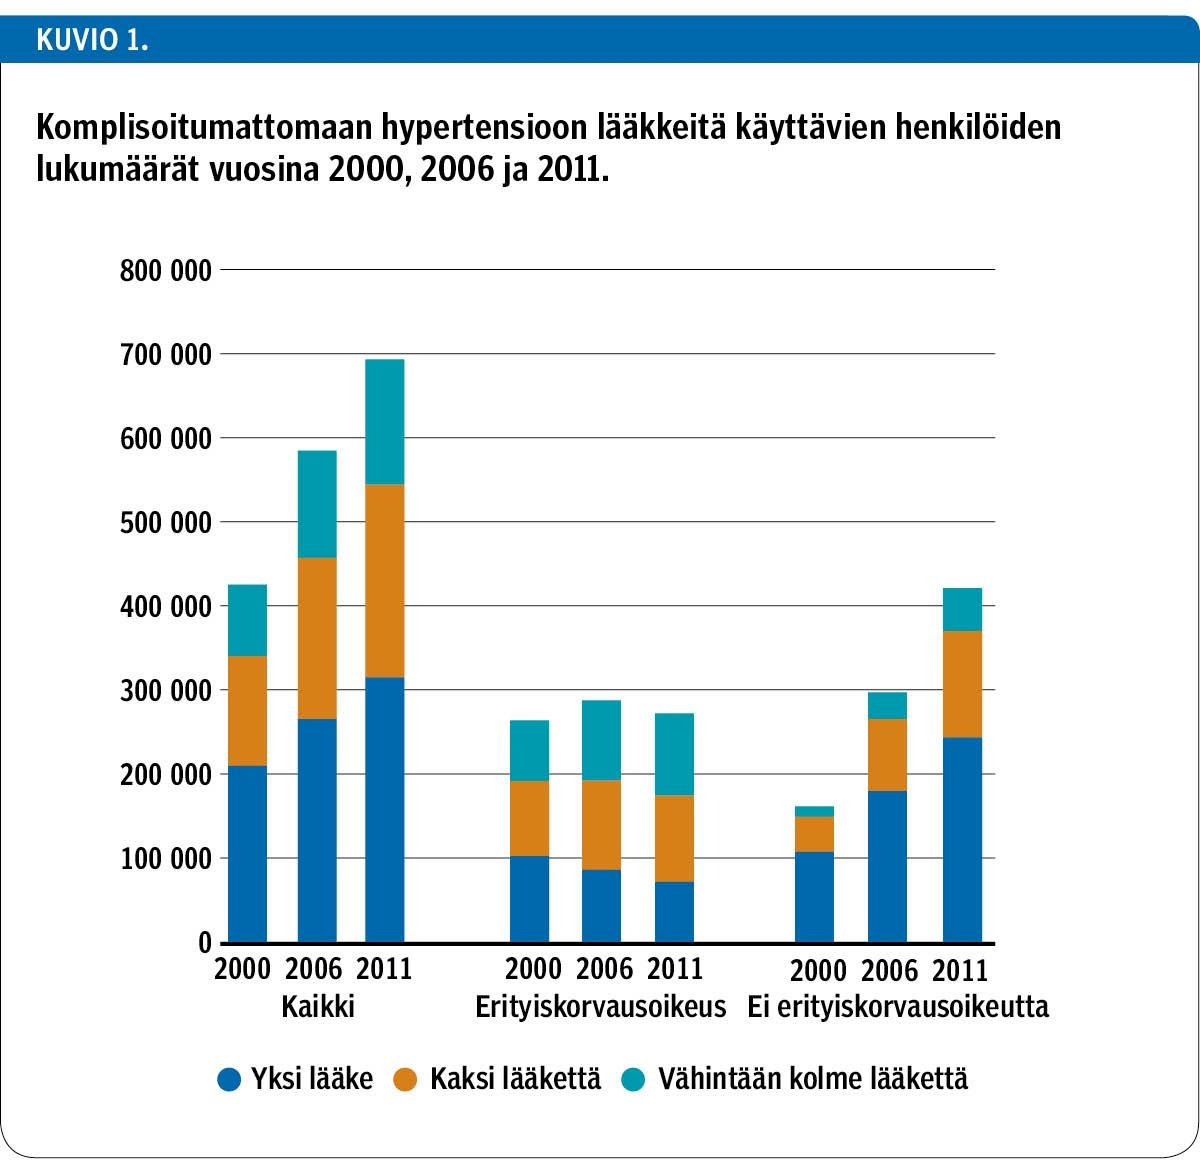 Komplisoitumattomaan hypertensioon lääkkeitä käyttävien henkilöiden lukumäärät vuosina 2000, 2006 ja 2011.